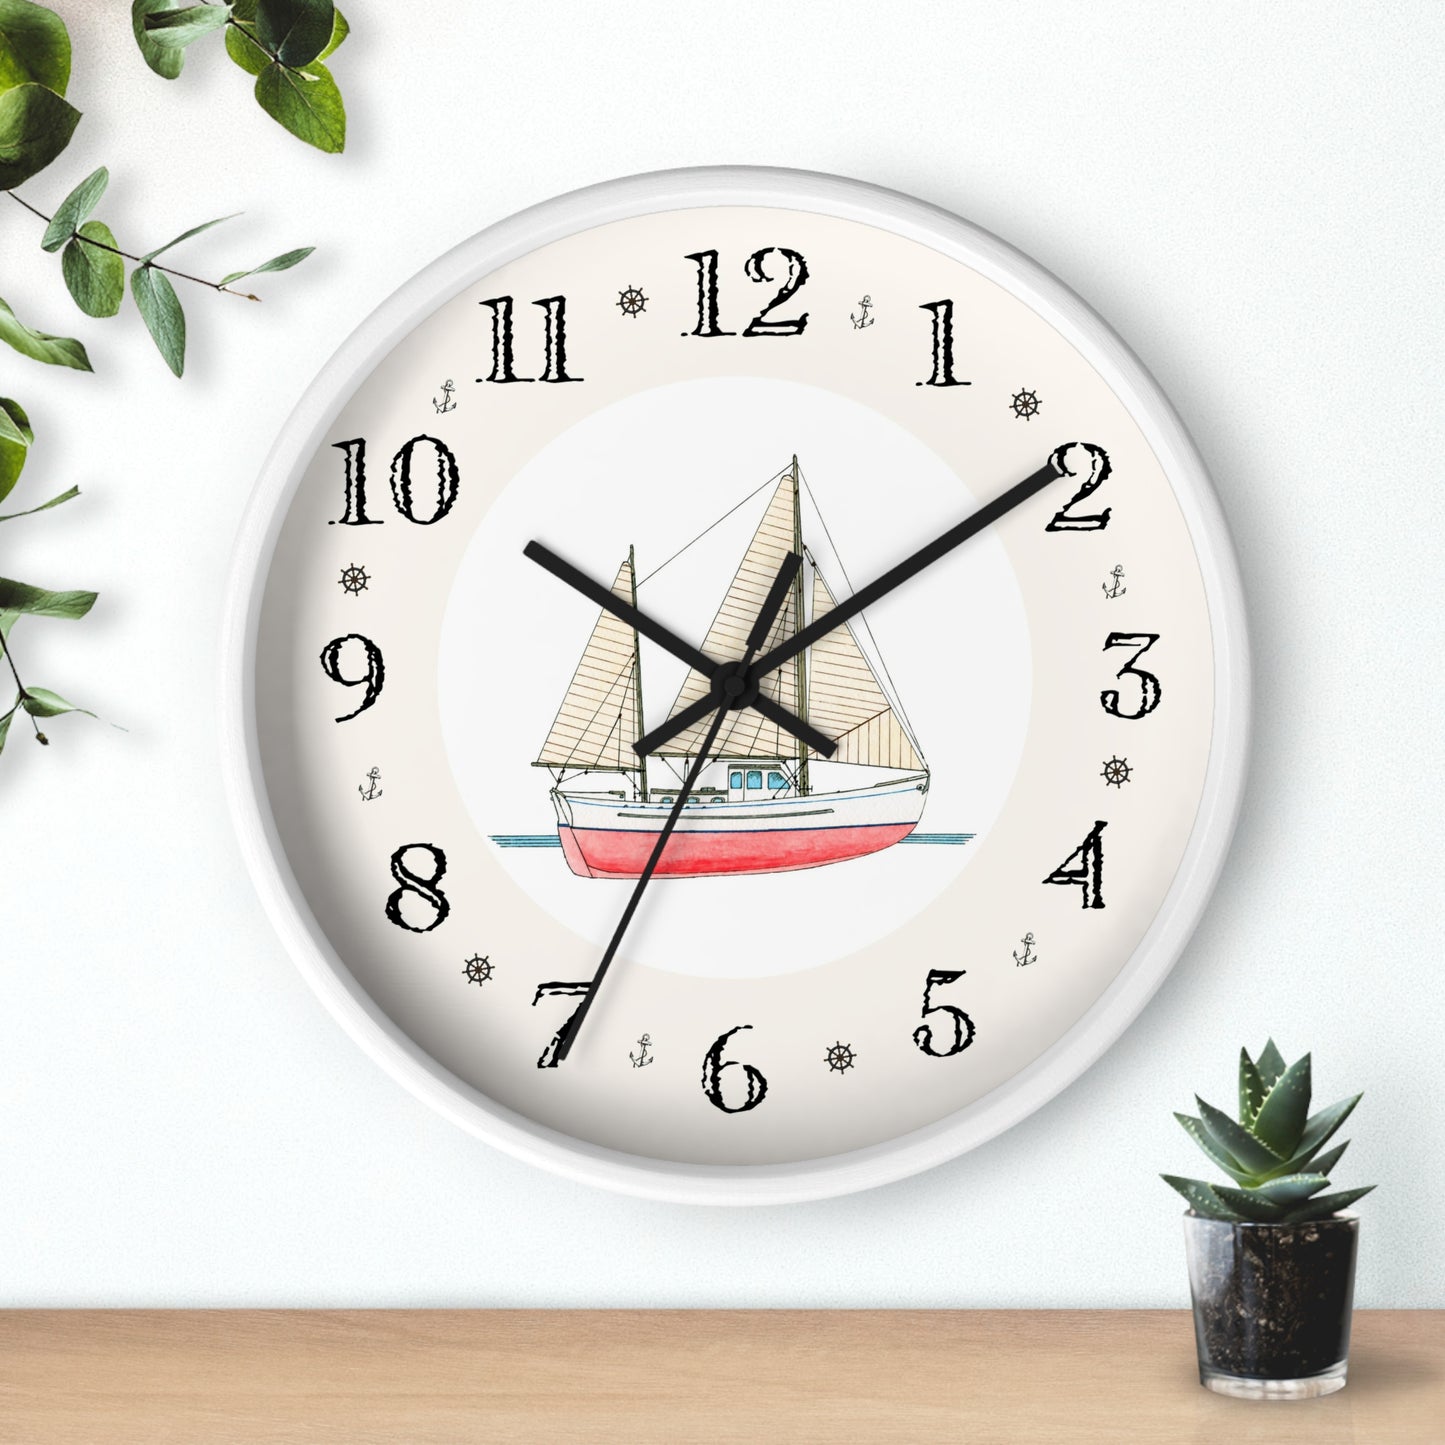 Aurora Heirloom Design Clock